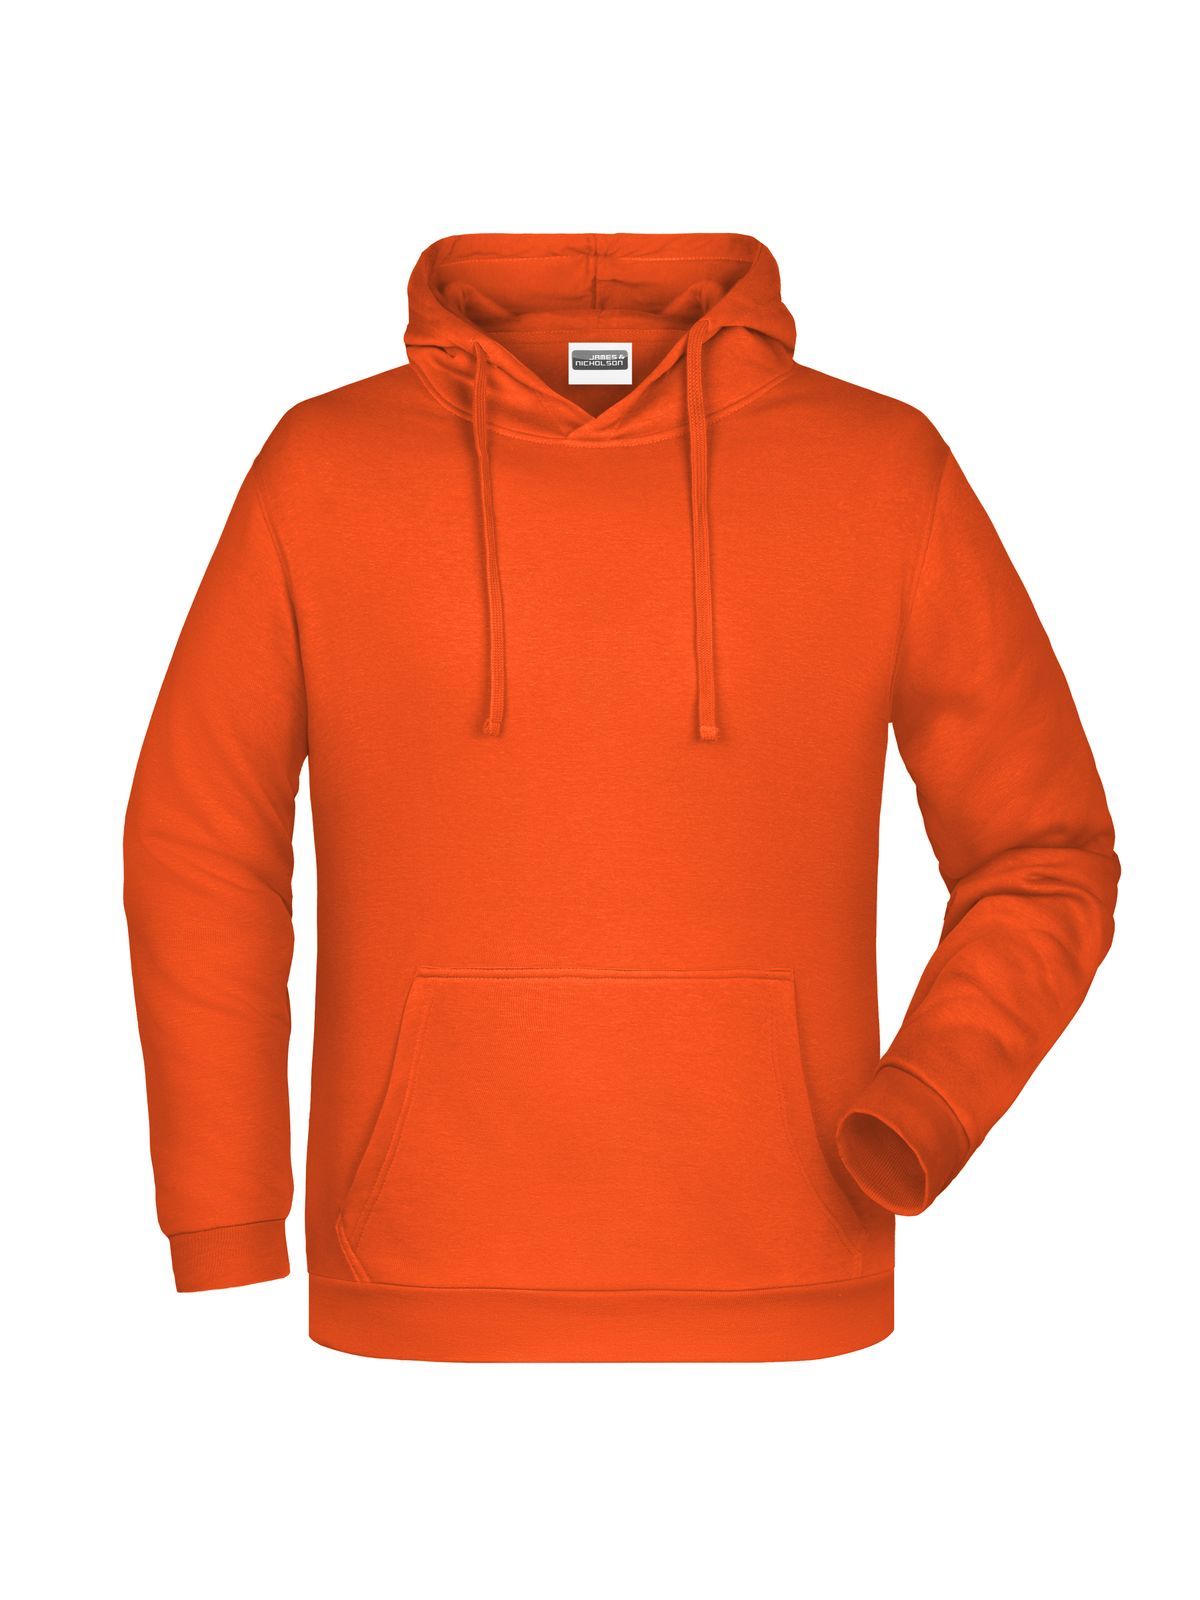 basic-hoody-man-orange.webp